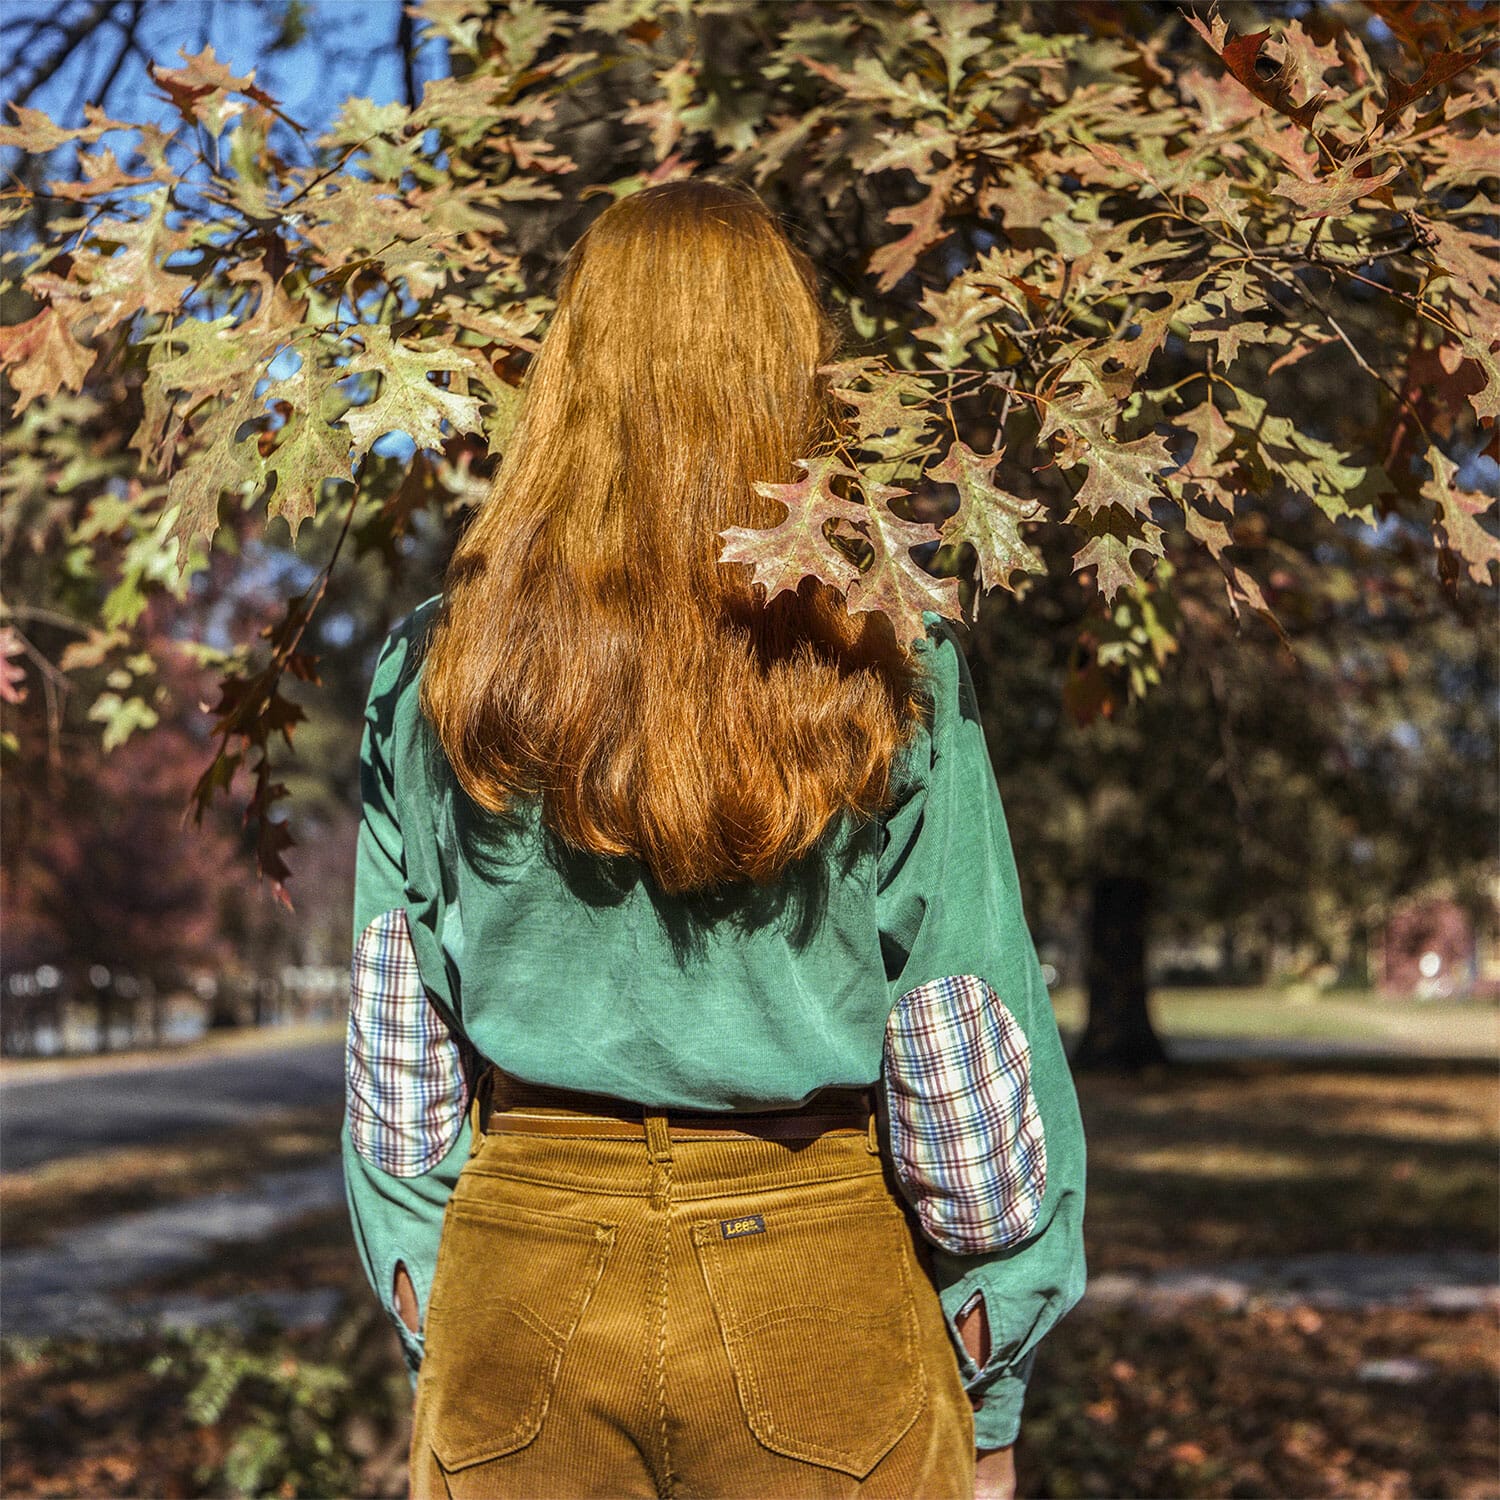 Bonnie Claire, Autumn leaves, Sumner, MS